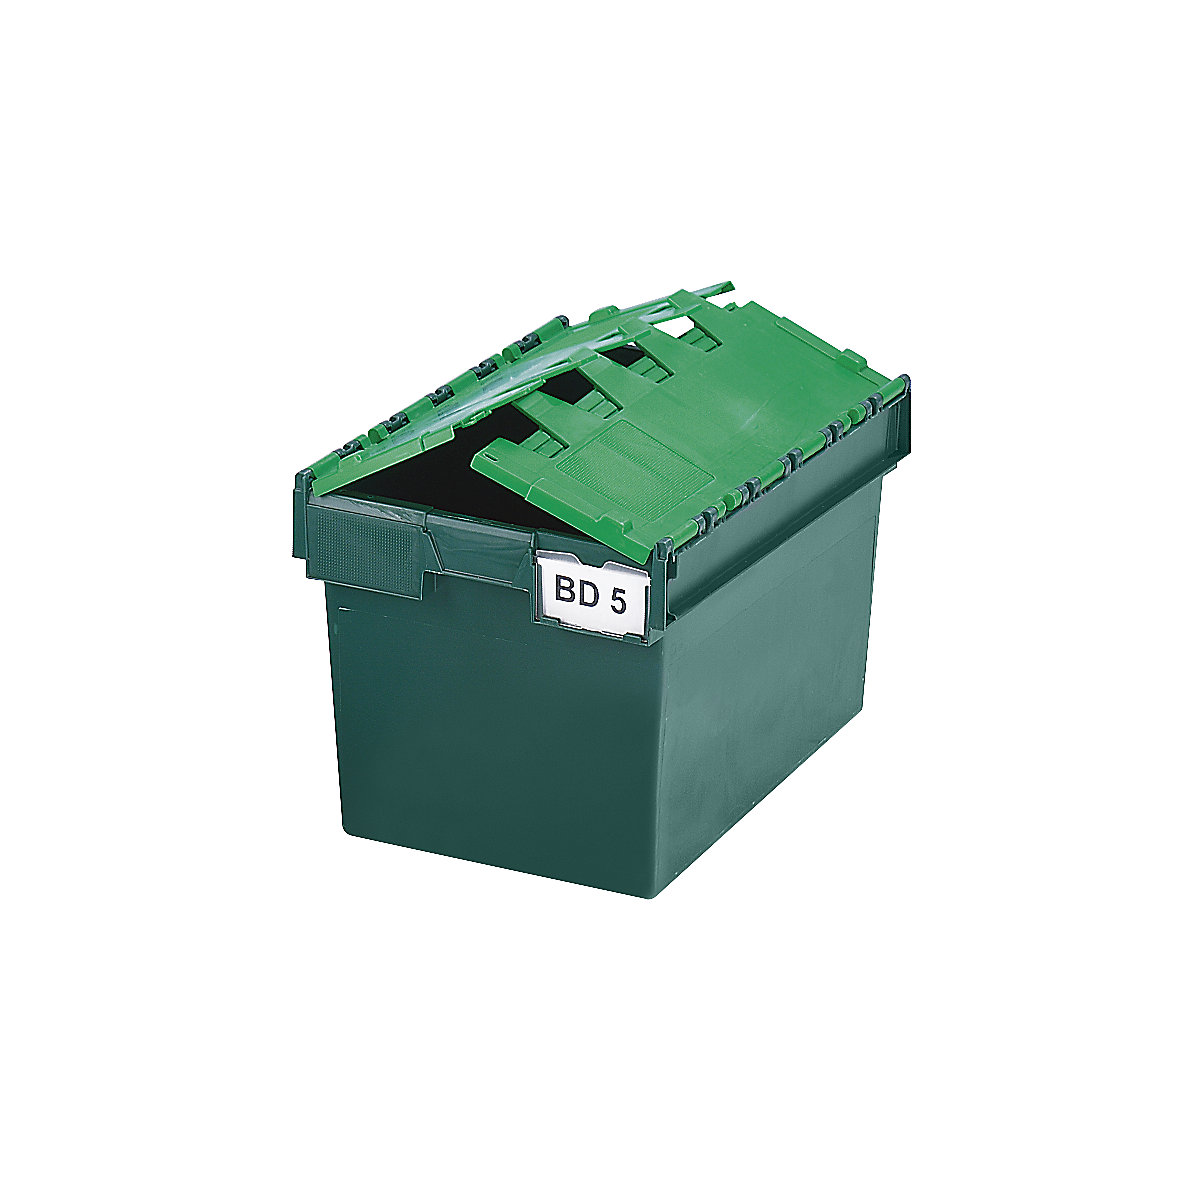 Pojemnik wielokrotnego użytku do ustawiania w stos ze składaną pokrywą, poj. 64 l, dł. x szer. x wys. 600 x 400 x 365 mm, zielony, od 10 szt.